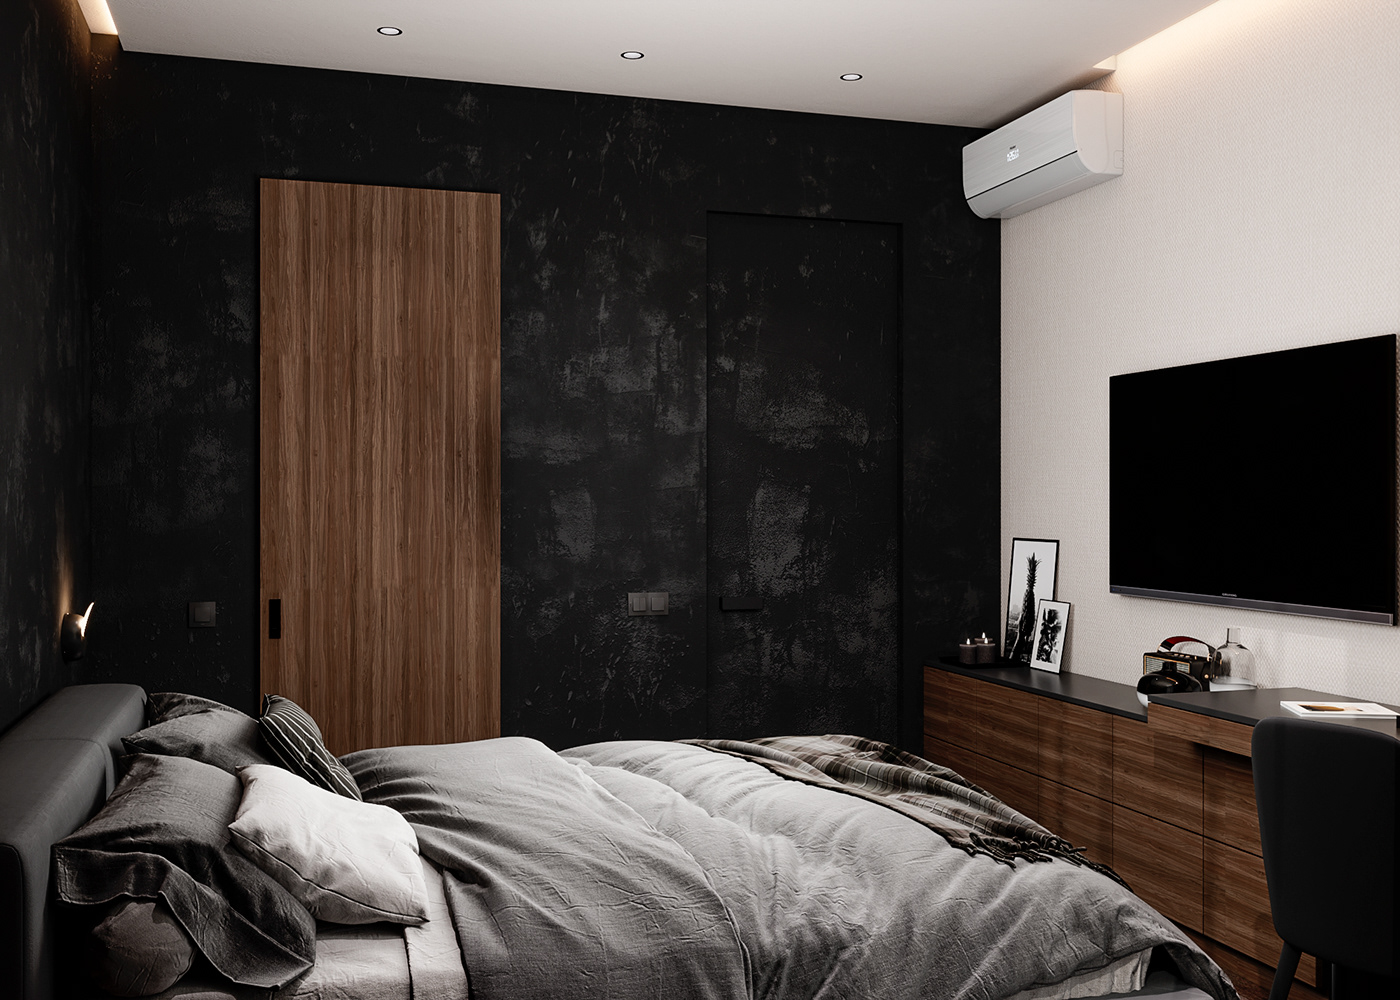 bedroom bedroom design visualization dark bedroom 3dsmax coronarenderer